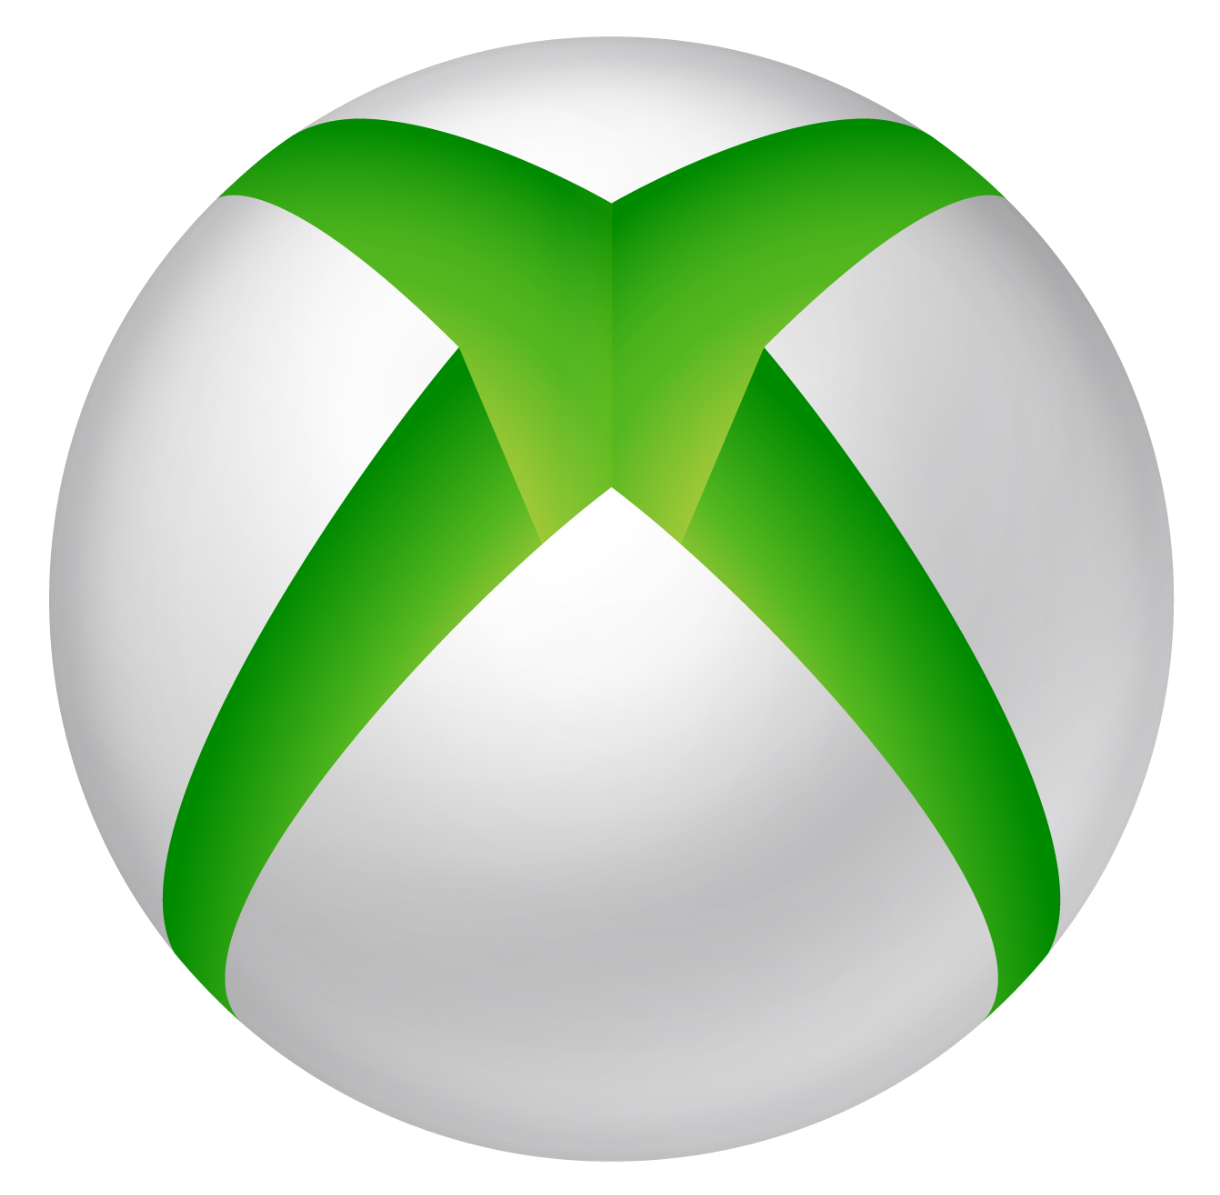 Imagens transparentes do Xbox